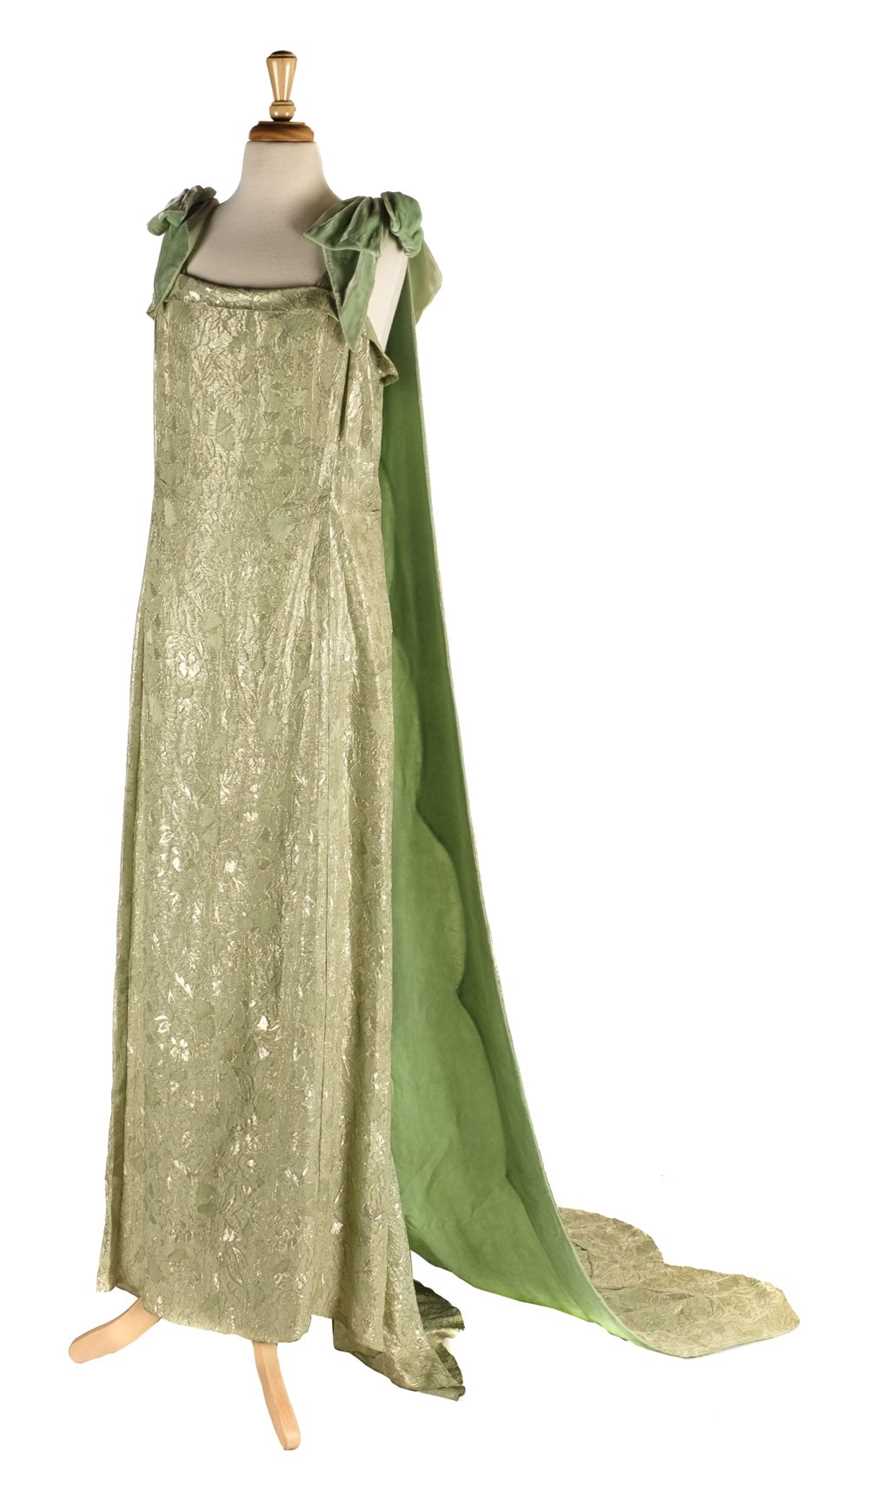 Lot 266 - Dress. A 1920s evening gown ...